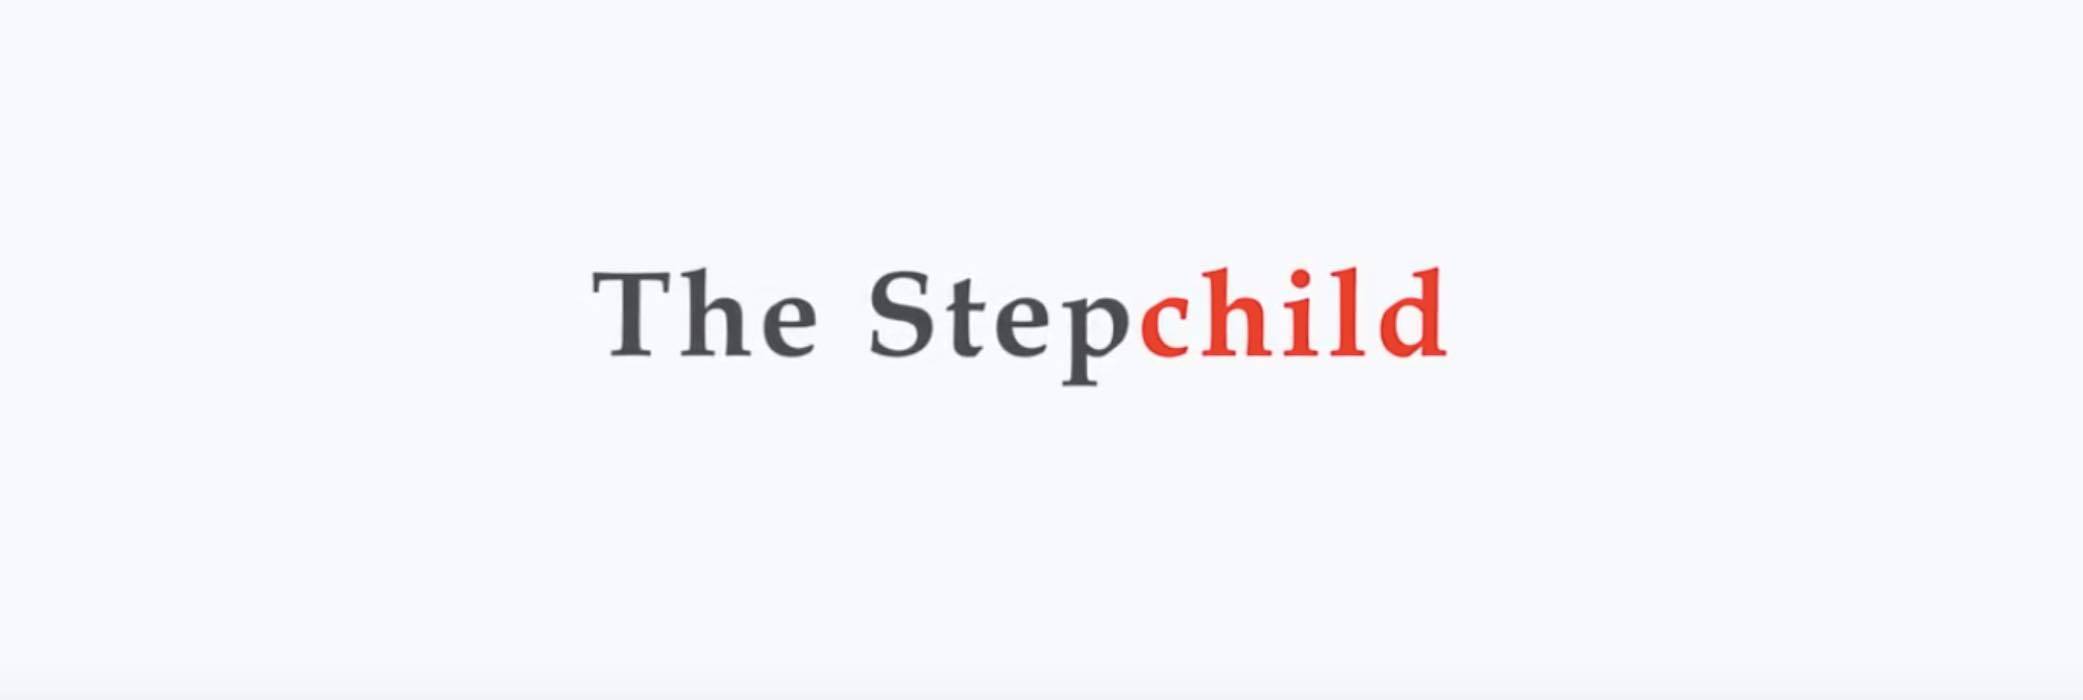 The Stepchild - Frammenti di un inganno: trama e info del film su Rai 2